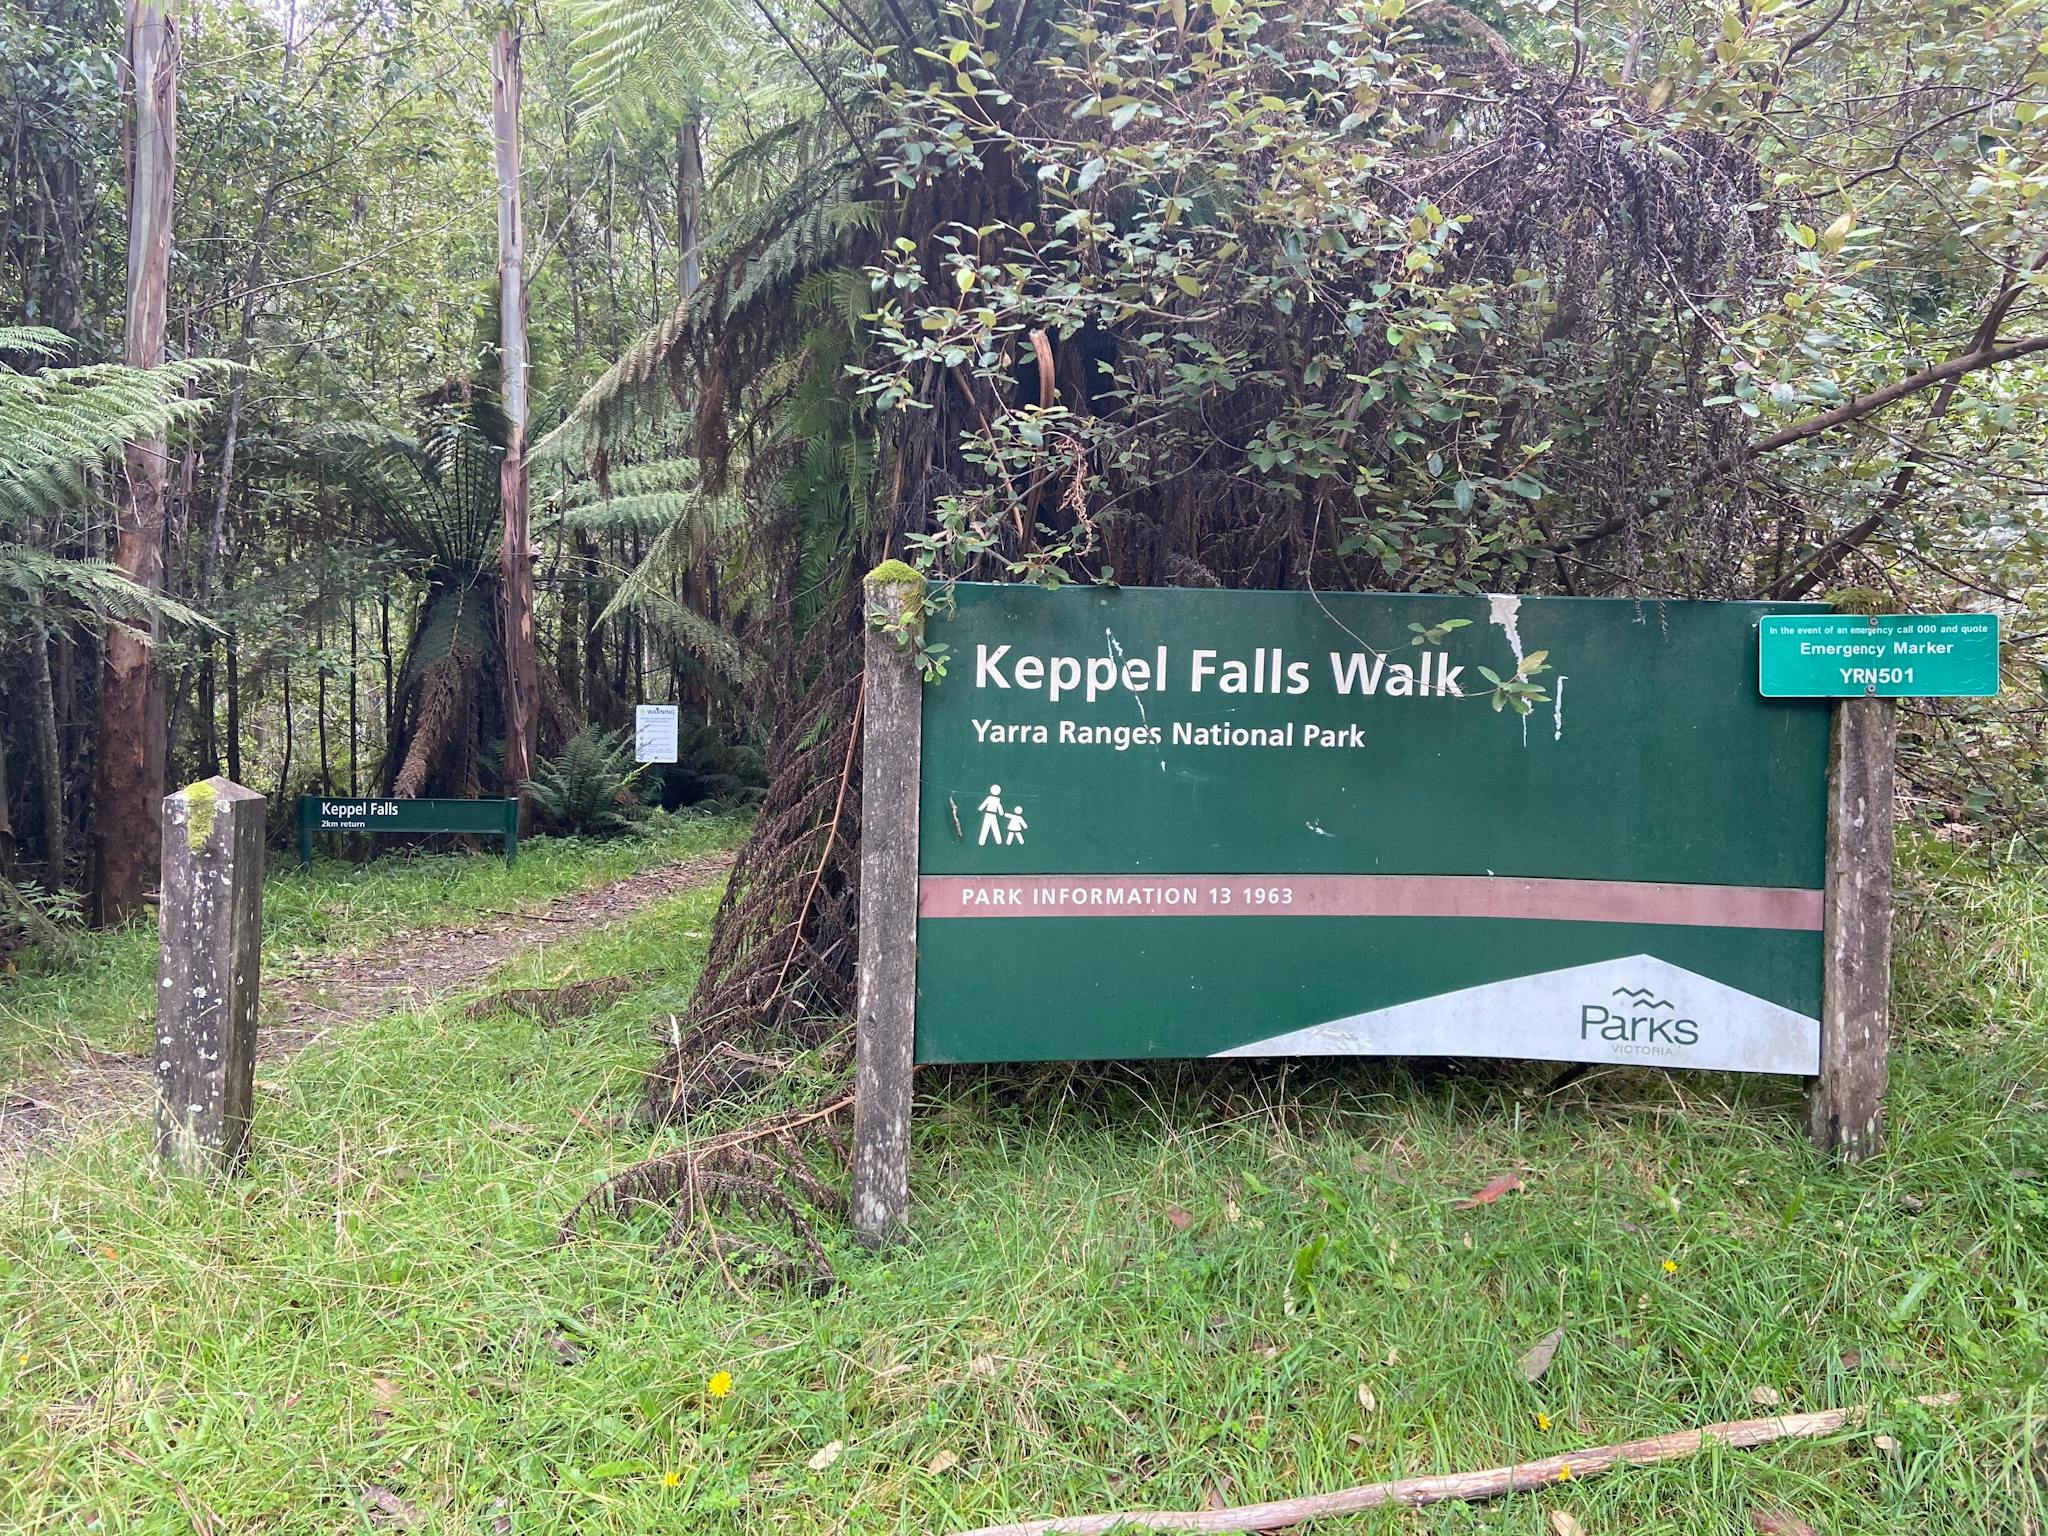 Keppel Falls Walk